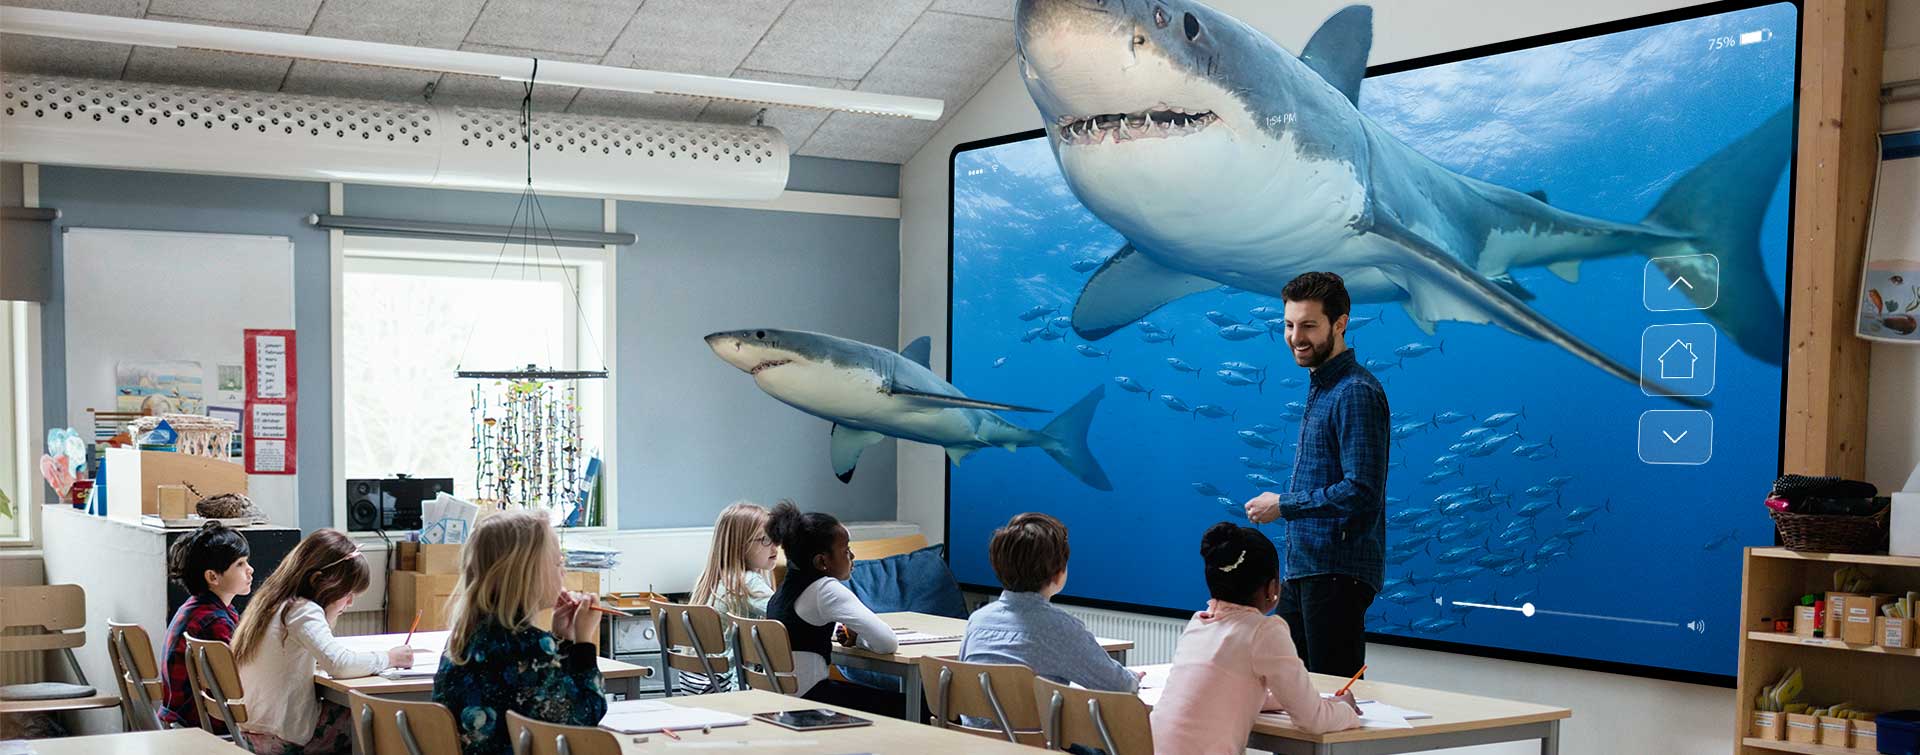 Klassenraum mit Haien, Schülern und einem Lehrer